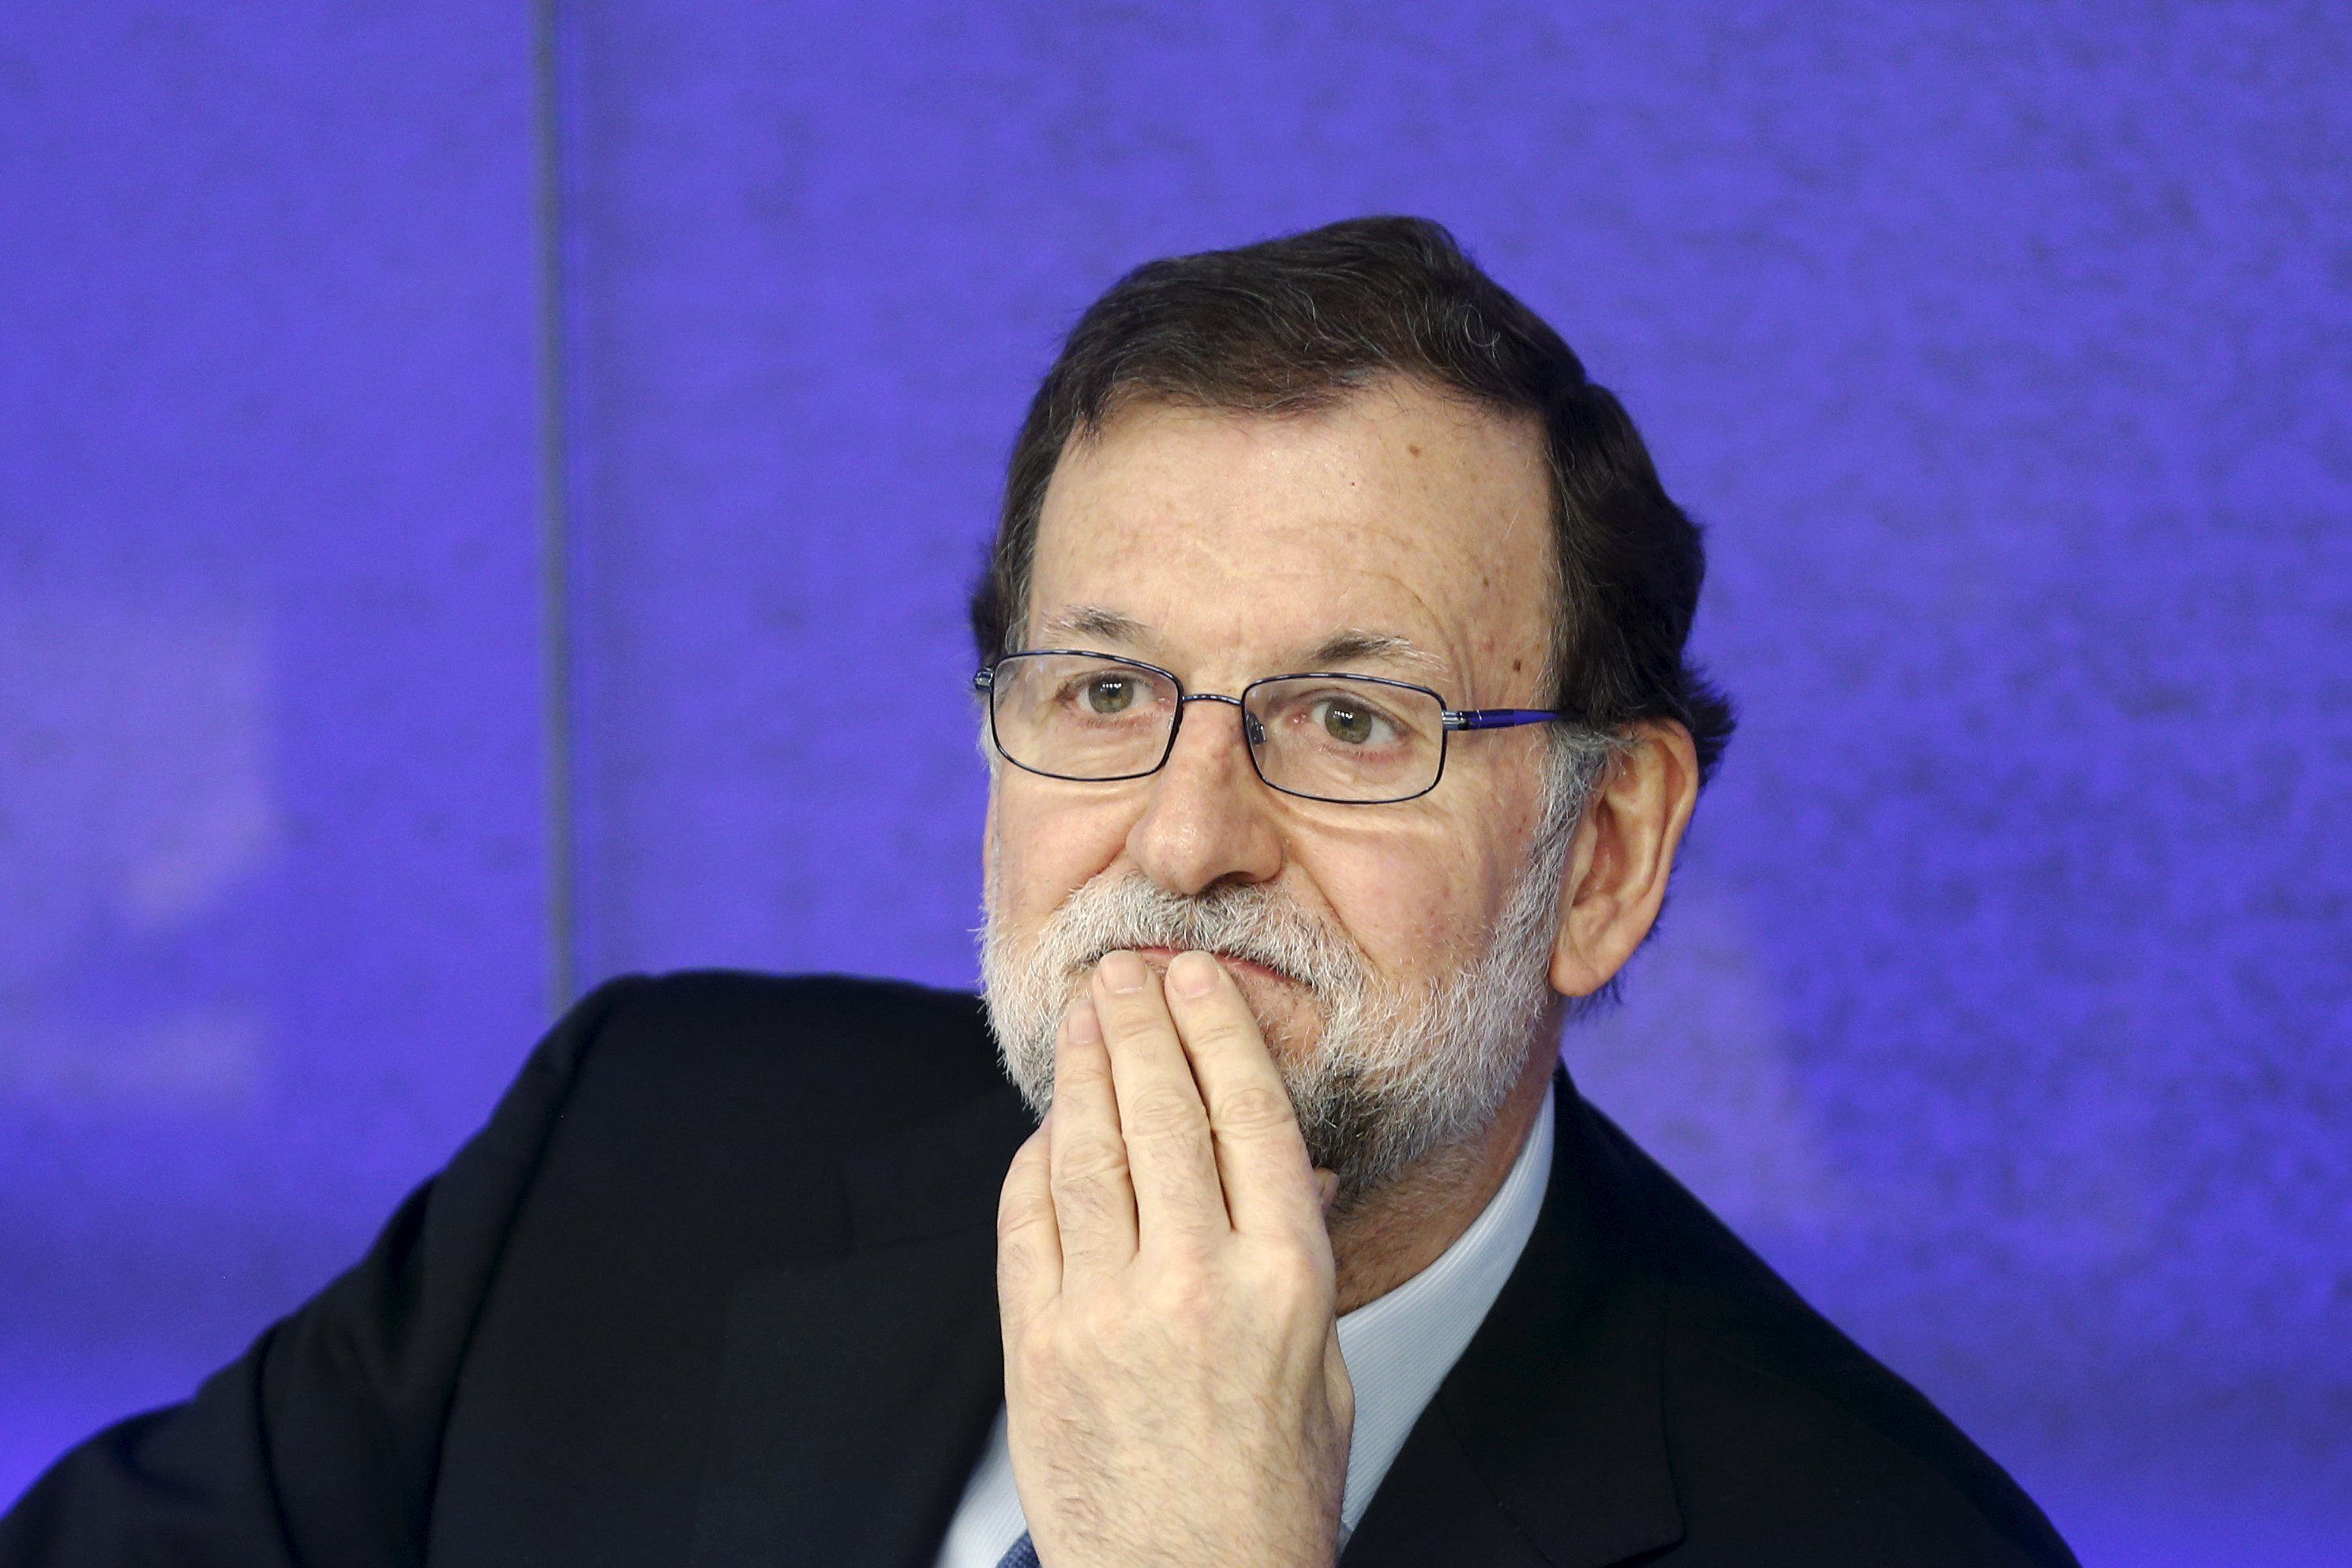 El líder del PP, Mariano Rajoy, reiteró que lo más probable es que se repitan las elecciones en España.